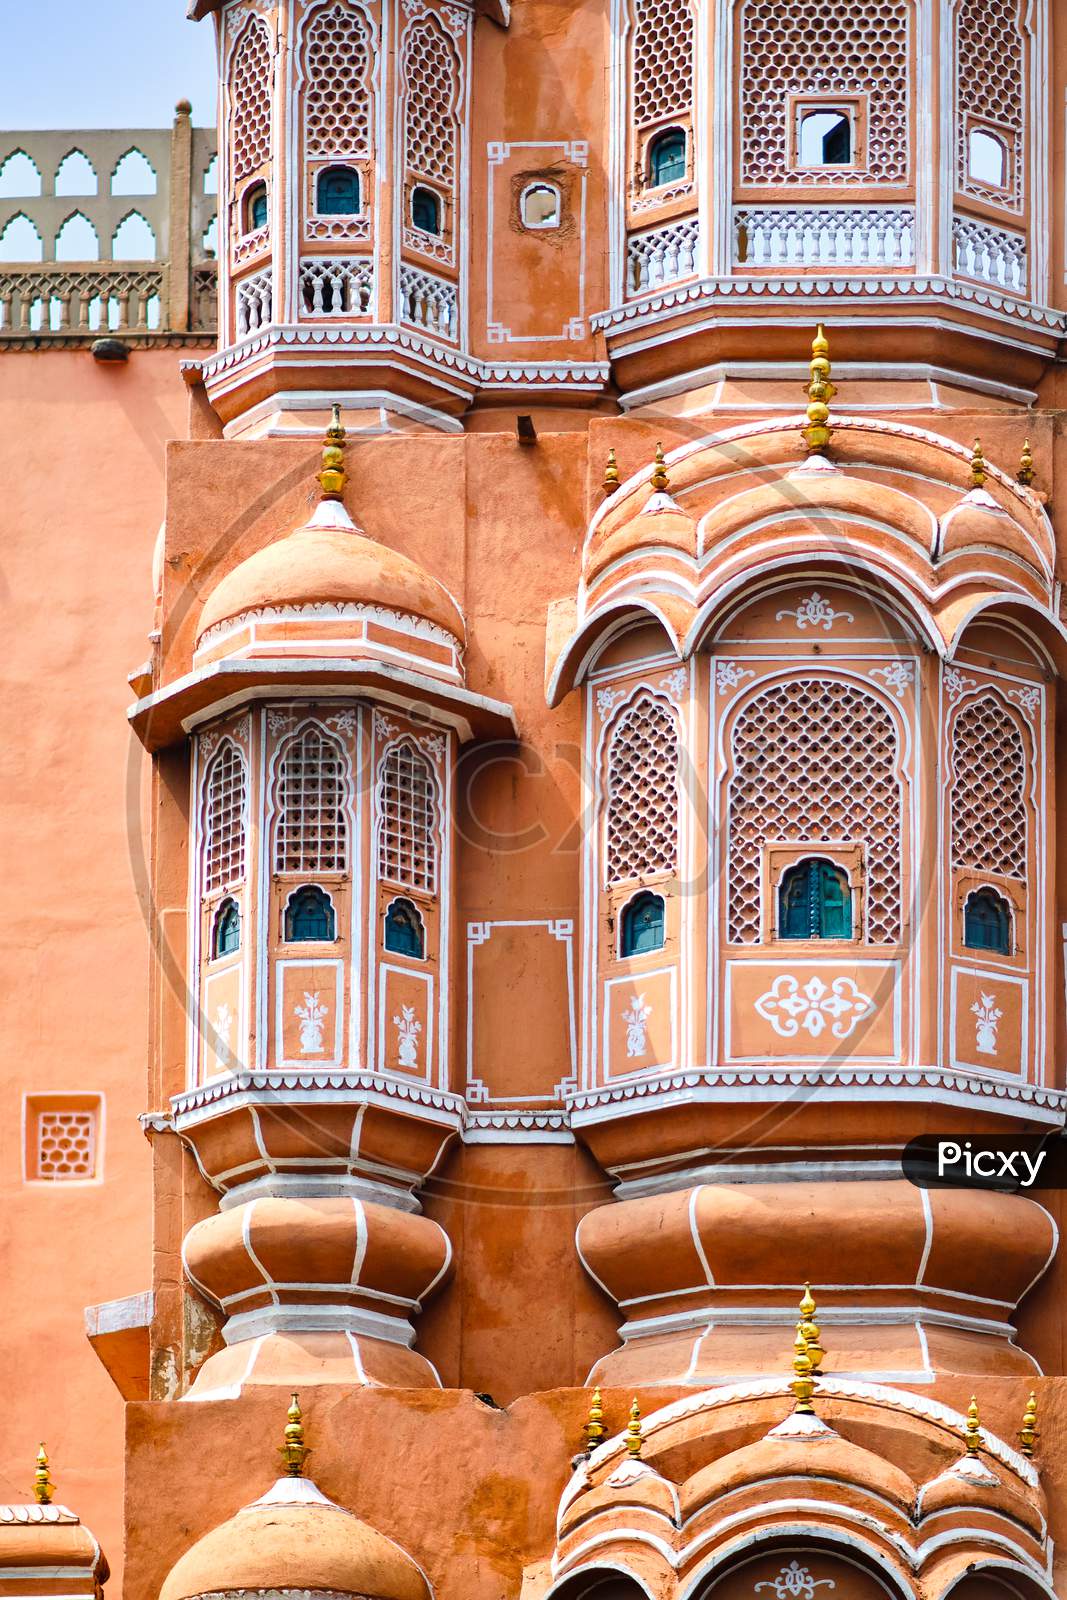 Facade Details Of The Hawa Mahal Palace In Jaipur, Rajasthan, India